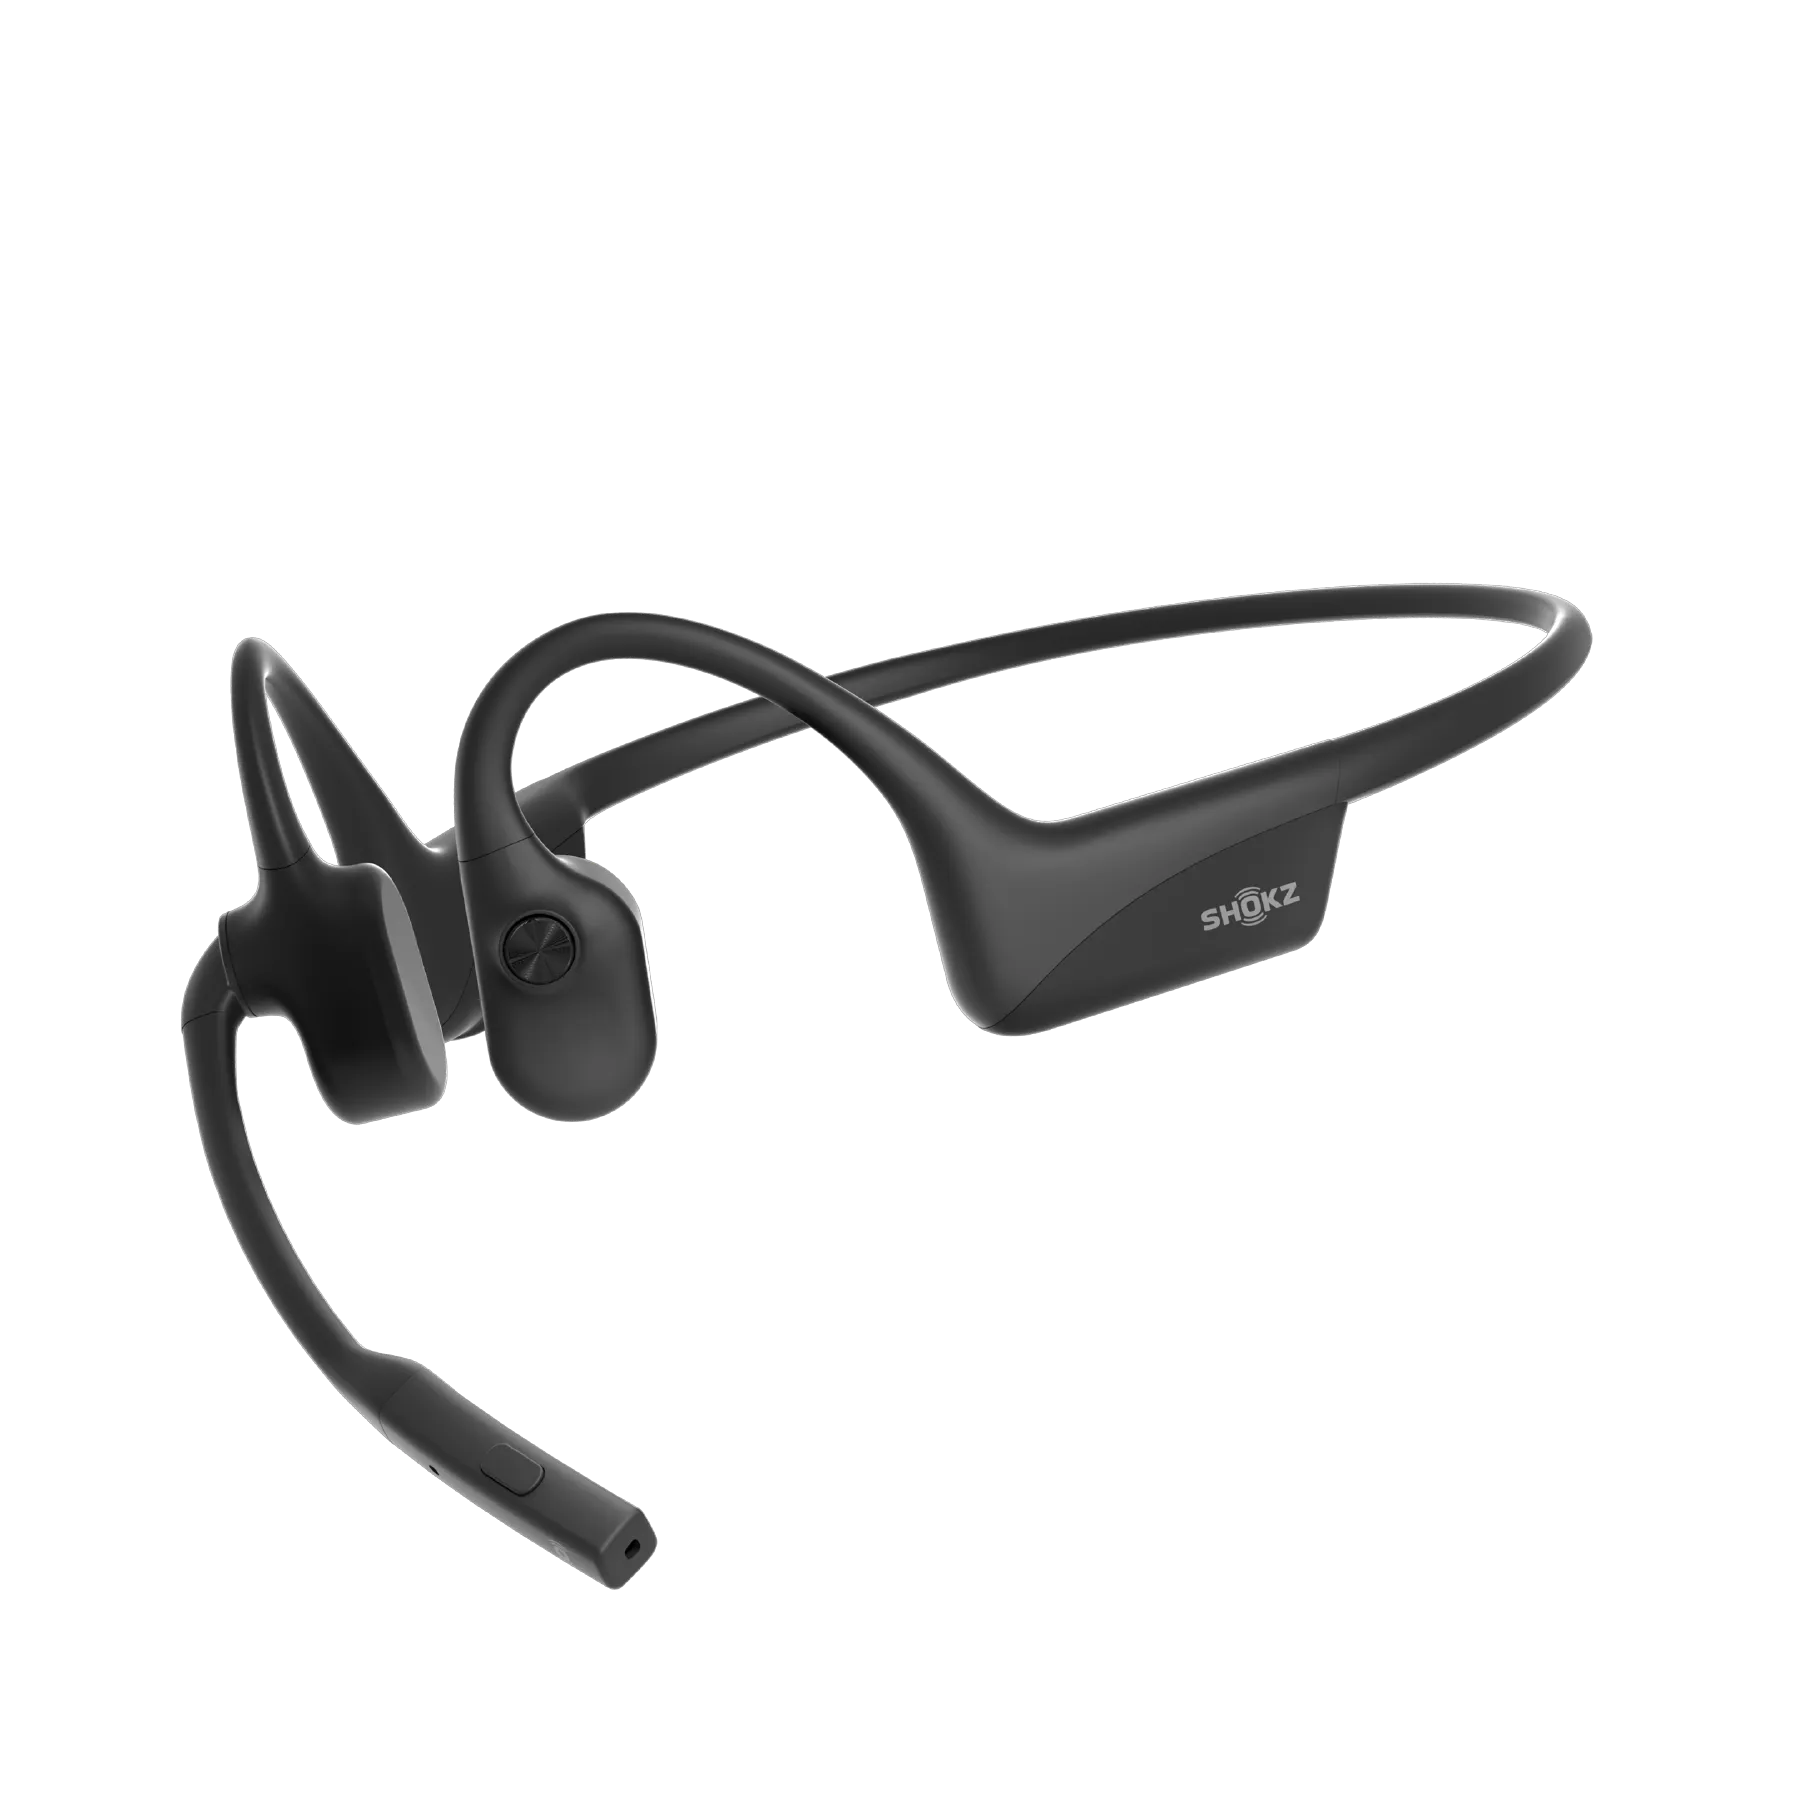 Bone Conduction Headphones Premium Open-Ear Wireless Bluetooth Sport  Headphones with Microphones, Sweatproof Waterproof Wireless Earphones for